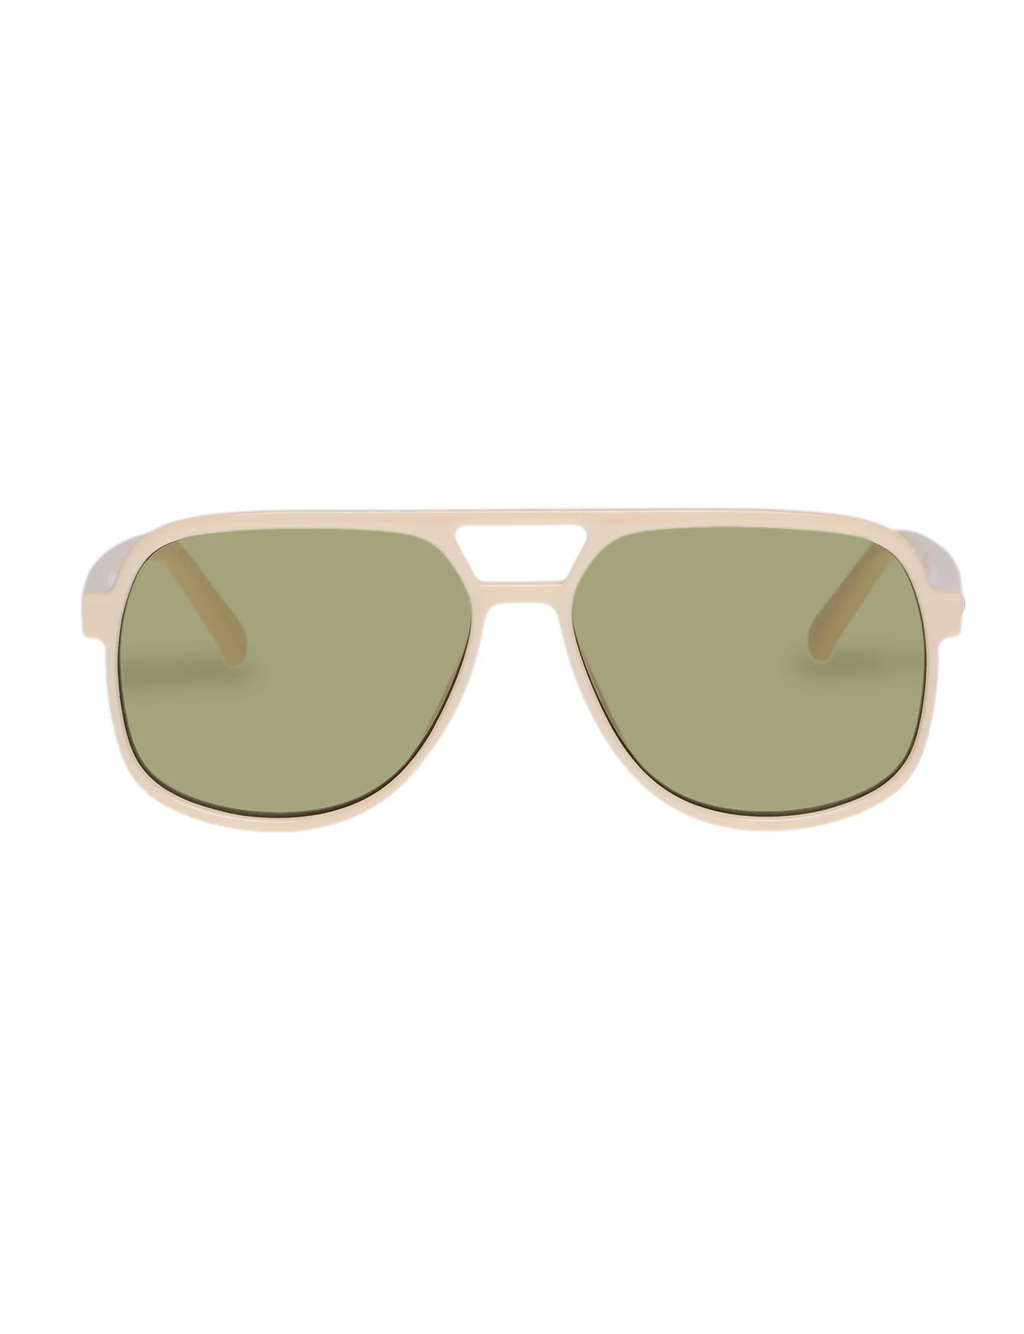 Trailbreaker Sunglasses, Ivory